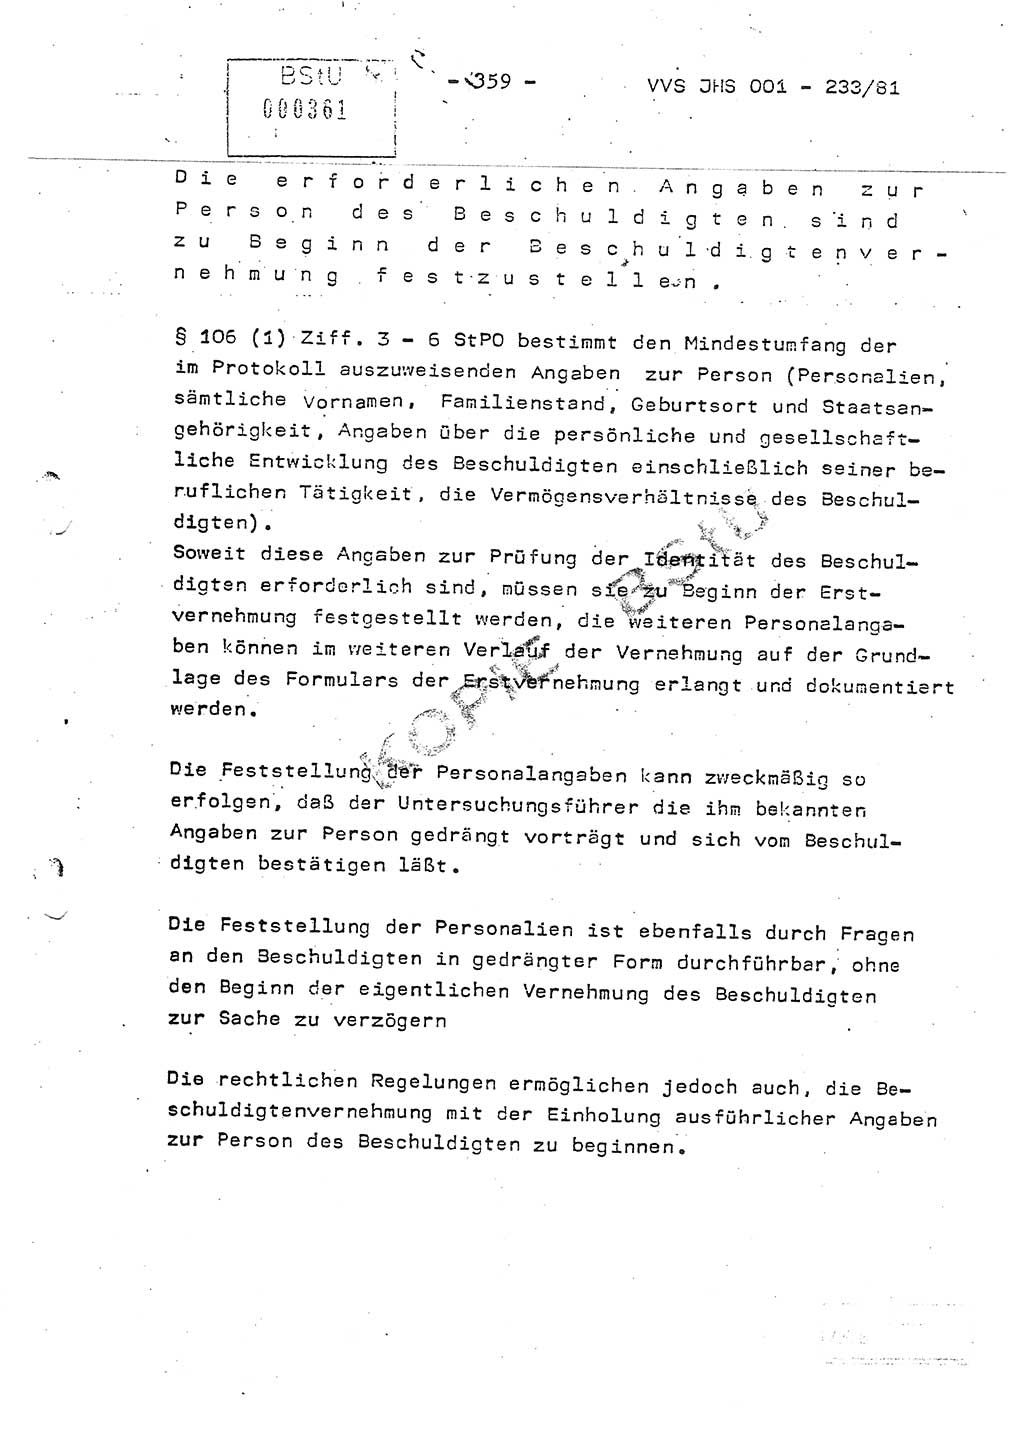 Dissertation Oberstleutnant Horst Zank (JHS), Oberstleutnant Dr. Karl-Heinz Knoblauch (JHS), Oberstleutnant Gustav-Adolf Kowalewski (HA Ⅸ), Oberstleutnant Wolfgang Plötner (HA Ⅸ), Ministerium für Staatssicherheit (MfS) [Deutsche Demokratische Republik (DDR)], Juristische Hochschule (JHS), Vertrauliche Verschlußsache (VVS) o001-233/81, Potsdam 1981, Blatt 359 (Diss. MfS DDR JHS VVS o001-233/81 1981, Bl. 359)